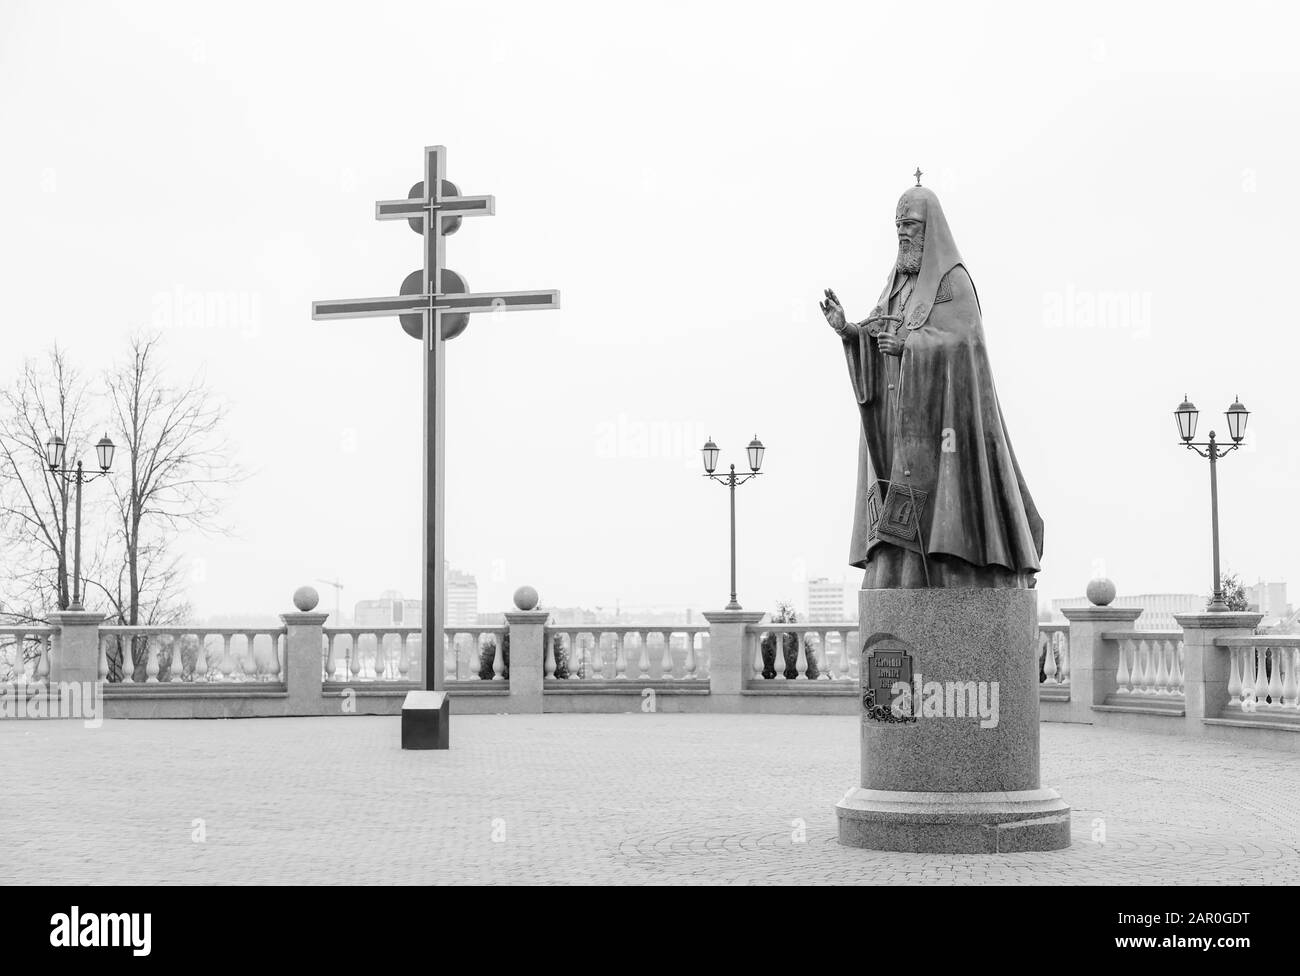 Wiebsk, WEISSRUSSLAND - 21. FEBRUAR 2016: Denkmal für Patriarch Alexy II. In der Nähe der Heiligen Dormition-Kathedrale. Wiebsk. Weißrussland Stockfoto